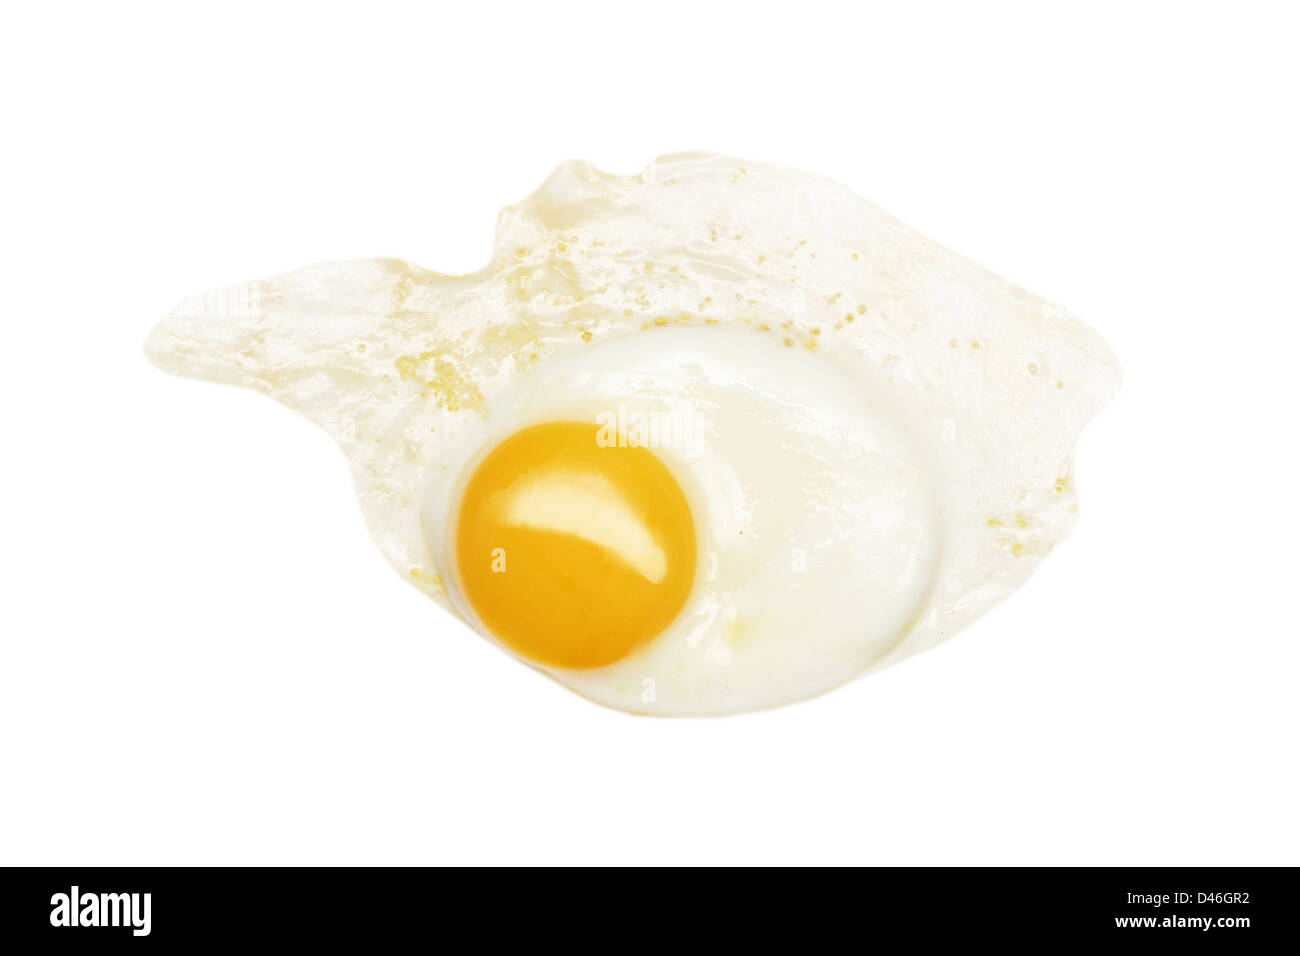 Fried egg isolated on white Stock Photo